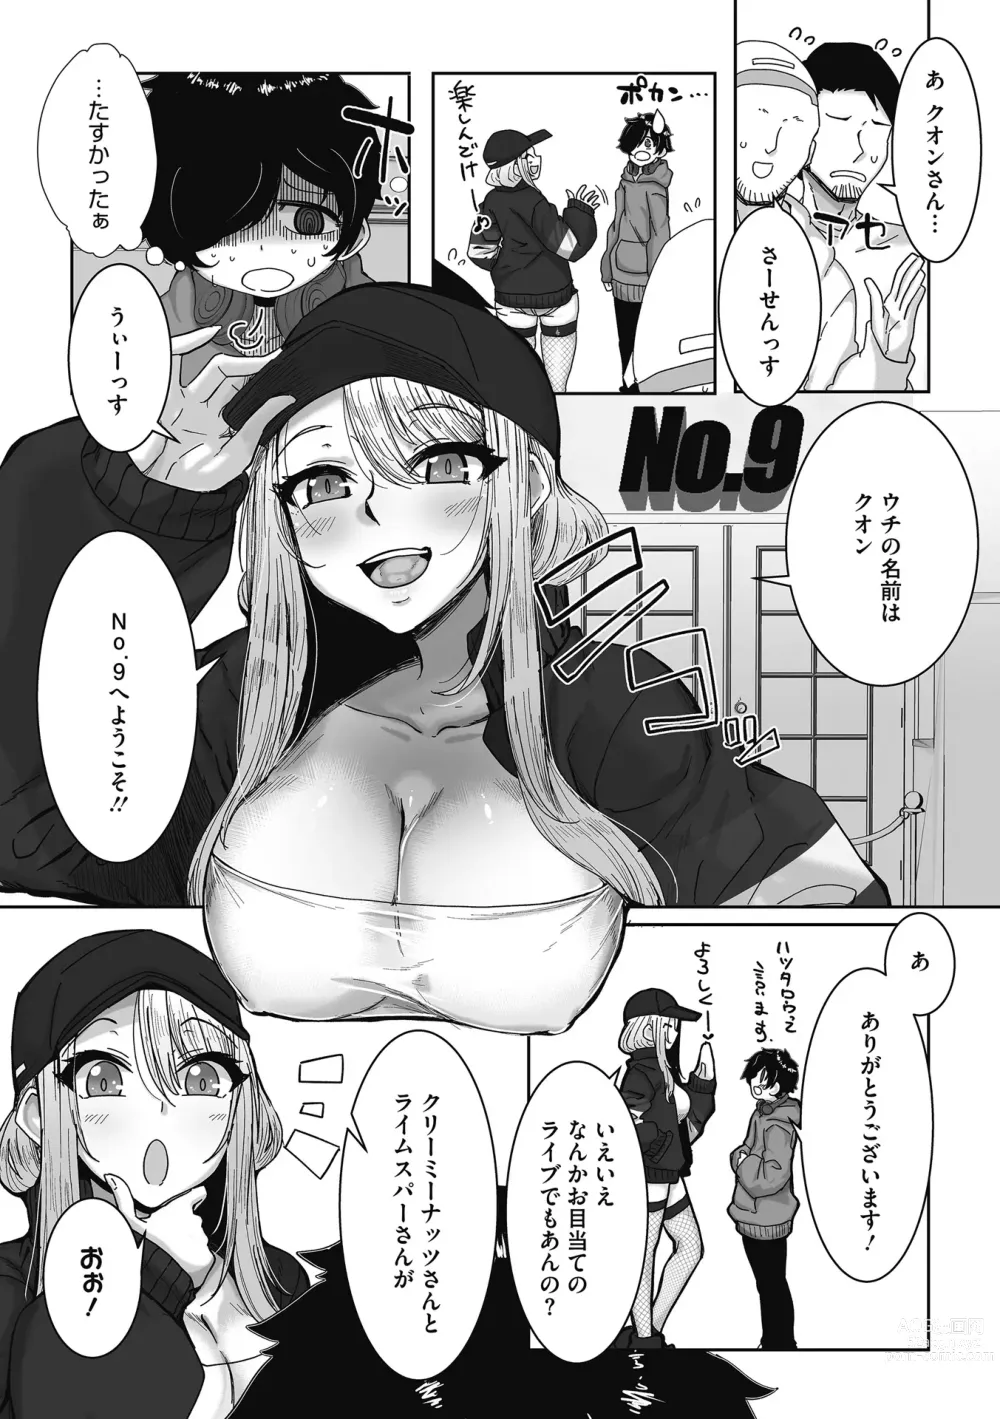 Page 4 of manga Otaku ni Yasashii Gal wa iru!